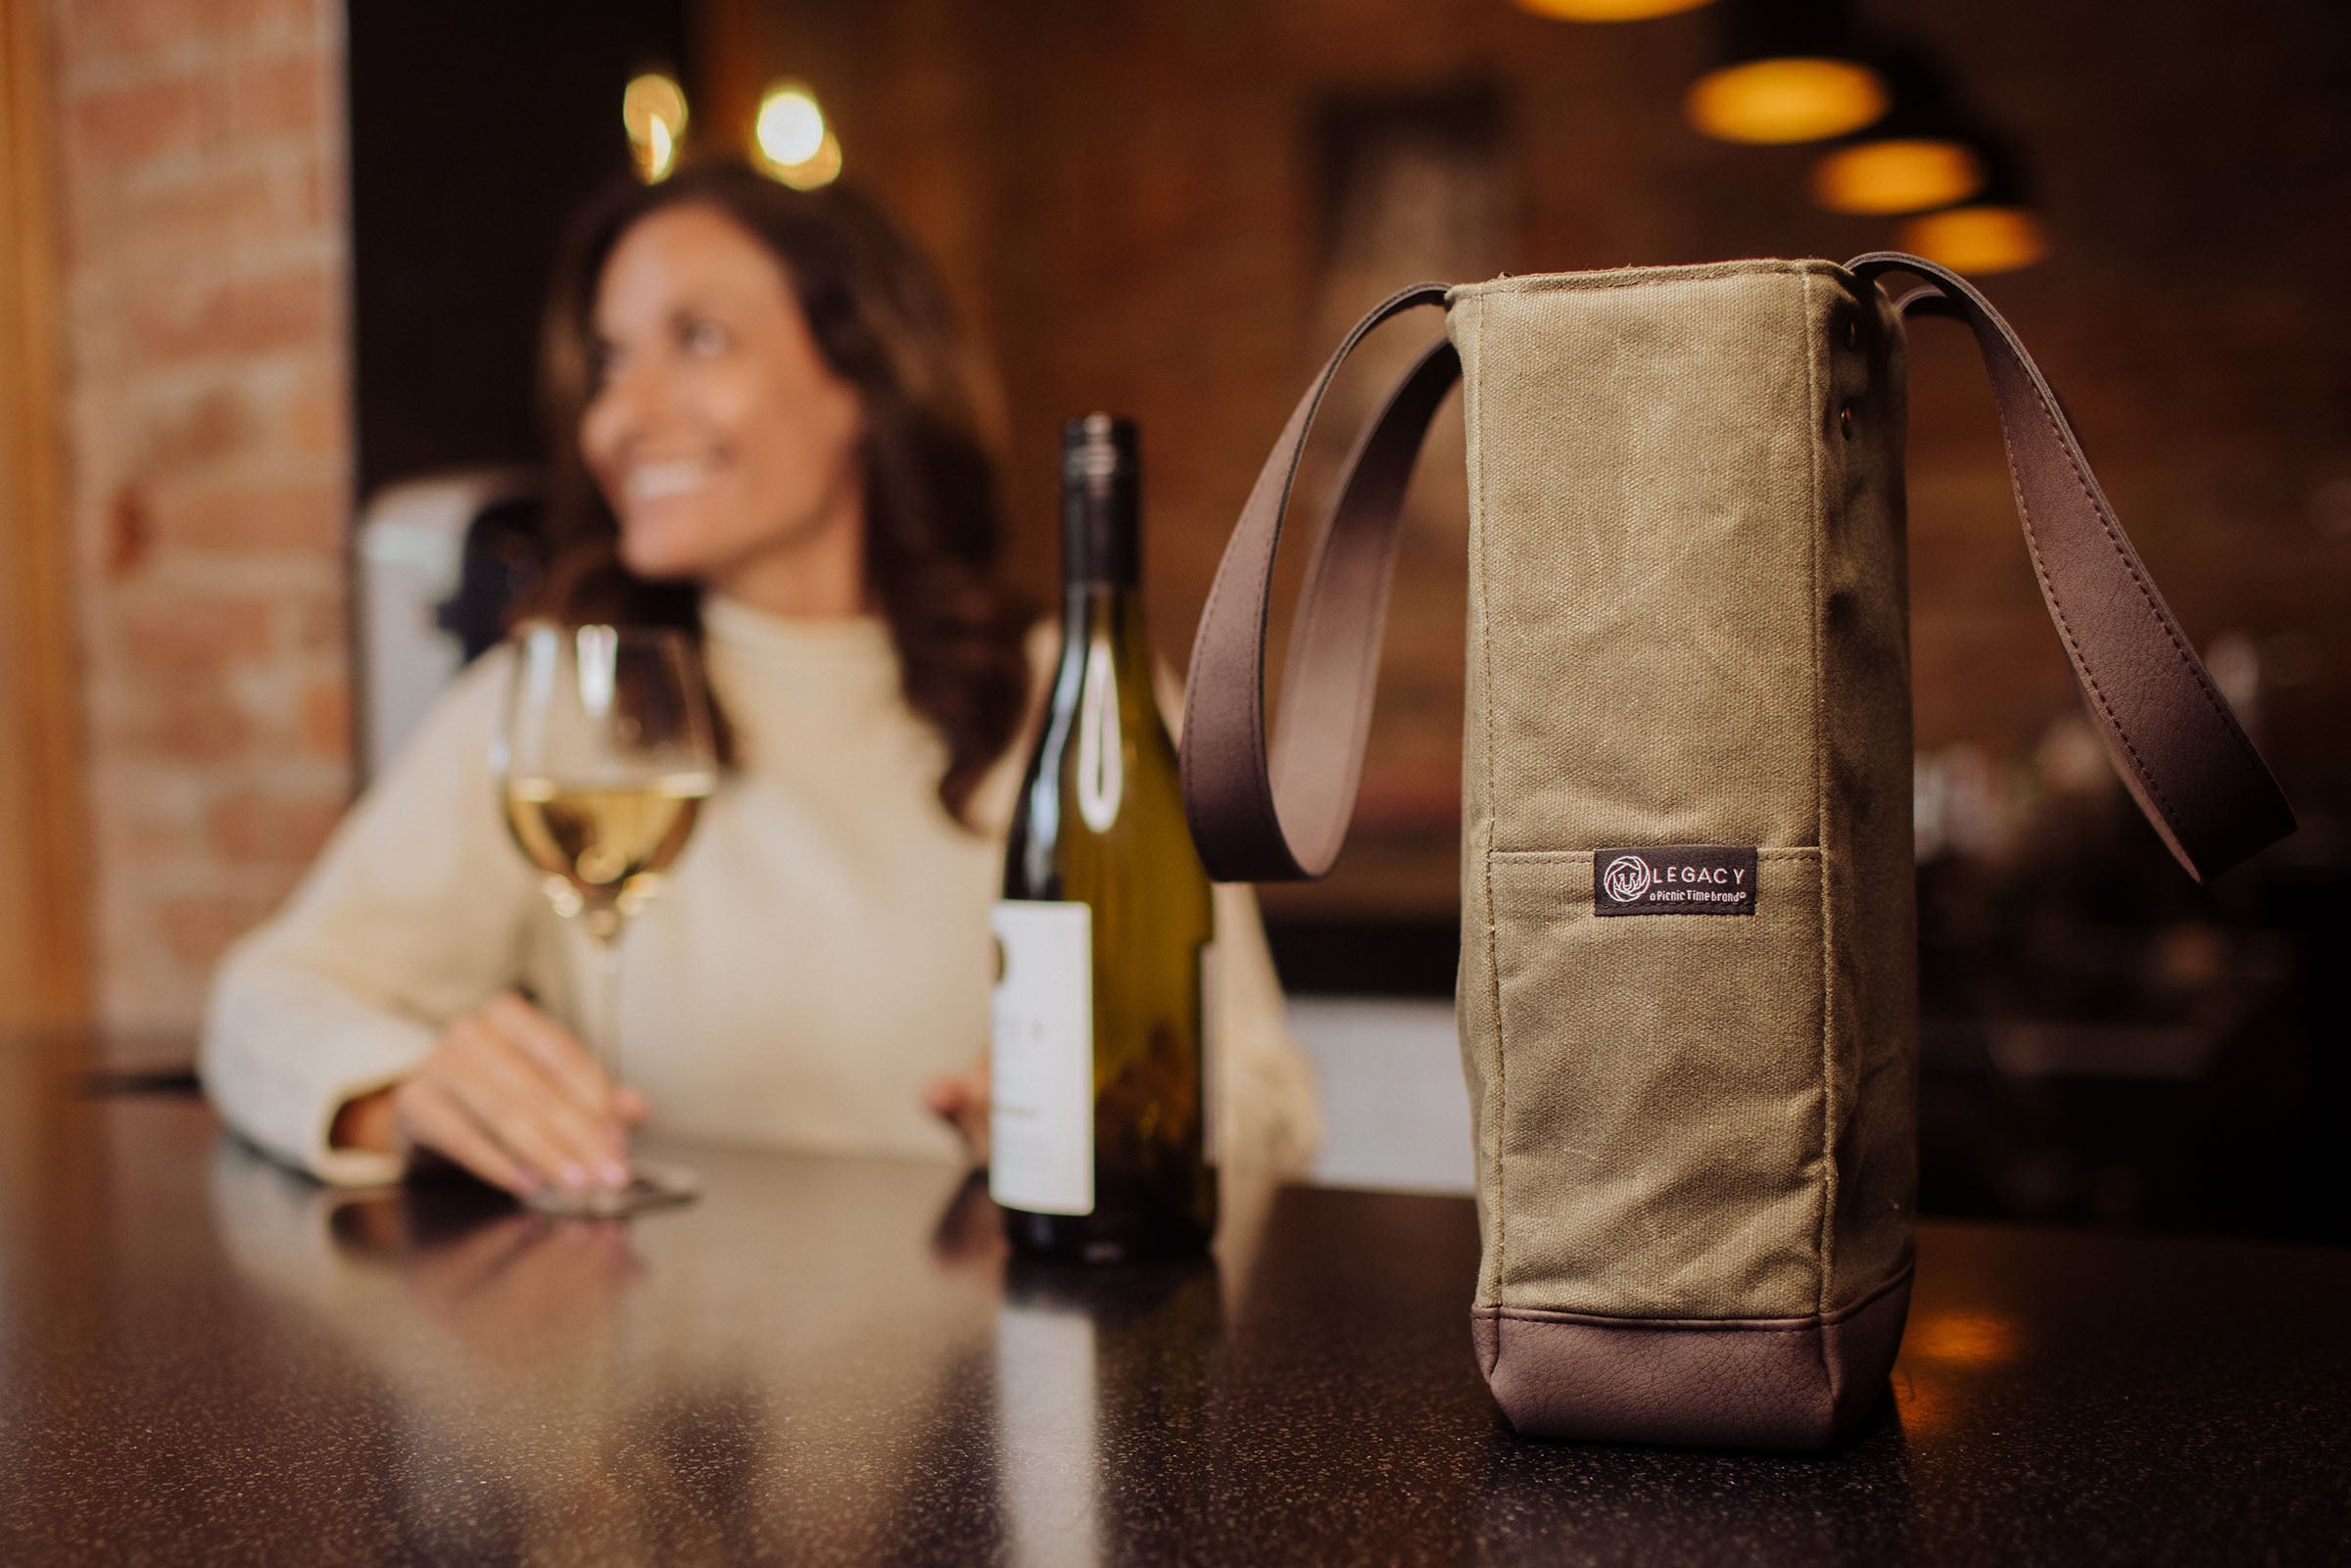 Kansas City Chiefs - 2 Bottle Insulated Wine Cooler Bag